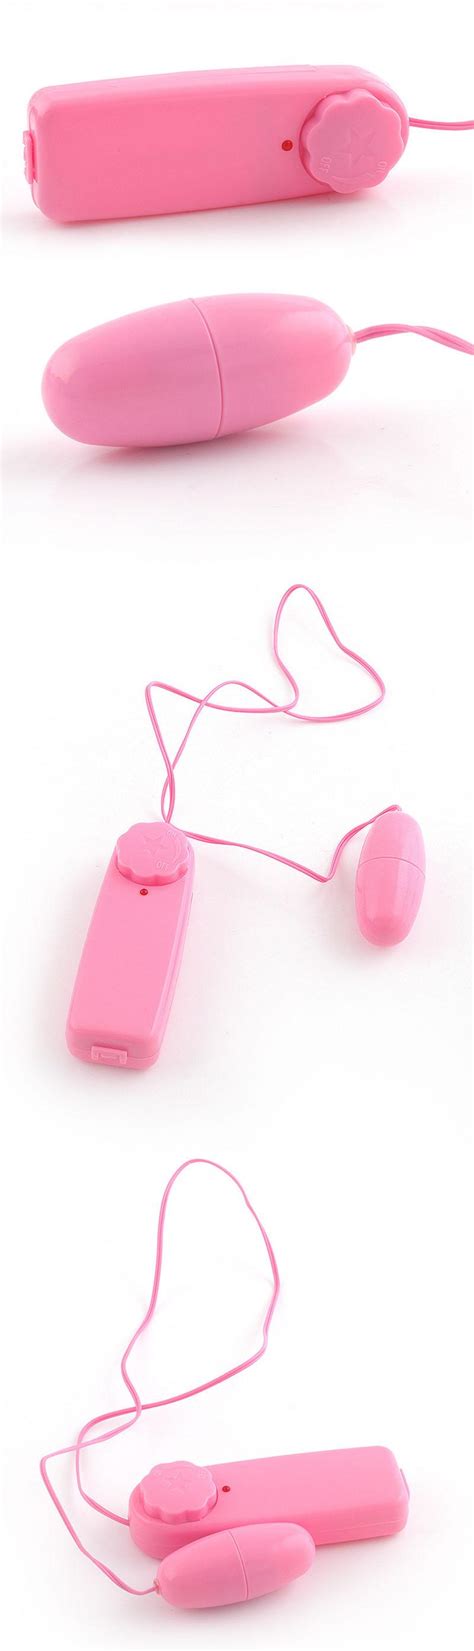 New Pink Single Jump Egg Vibrator Bullet Vibrator Clitoral G Spot Stimulators Sex Toys Sex